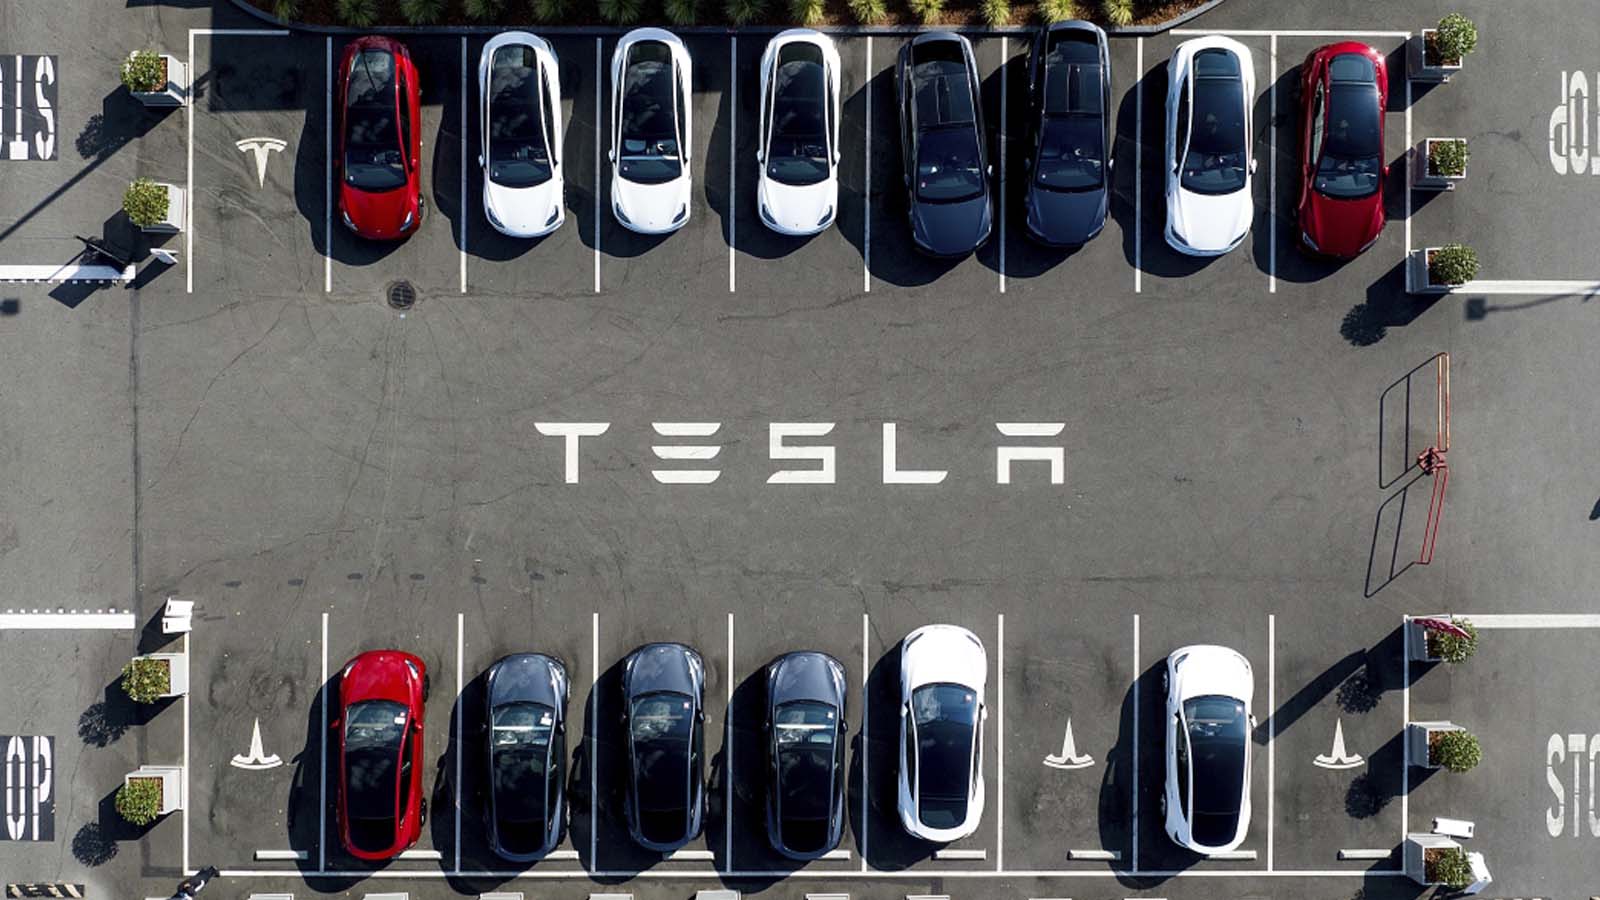 La NHTSA ordina un'azione correttiva per migliorare la sicurezza delle Tesla